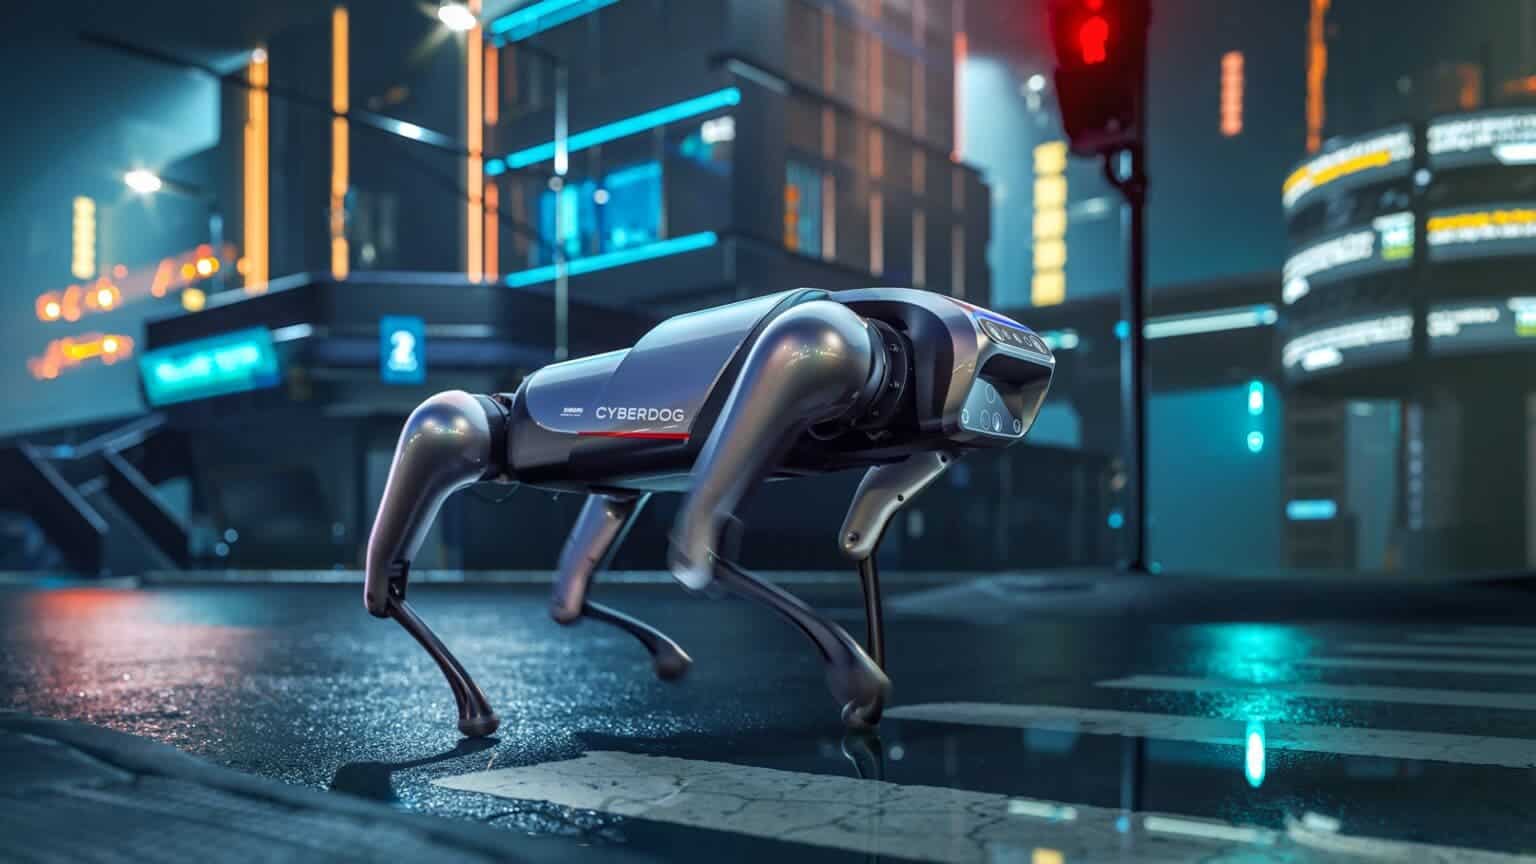 ربات سگ سایبری شیائومی CyberDog پیشگام ربات های بیونیک می شود